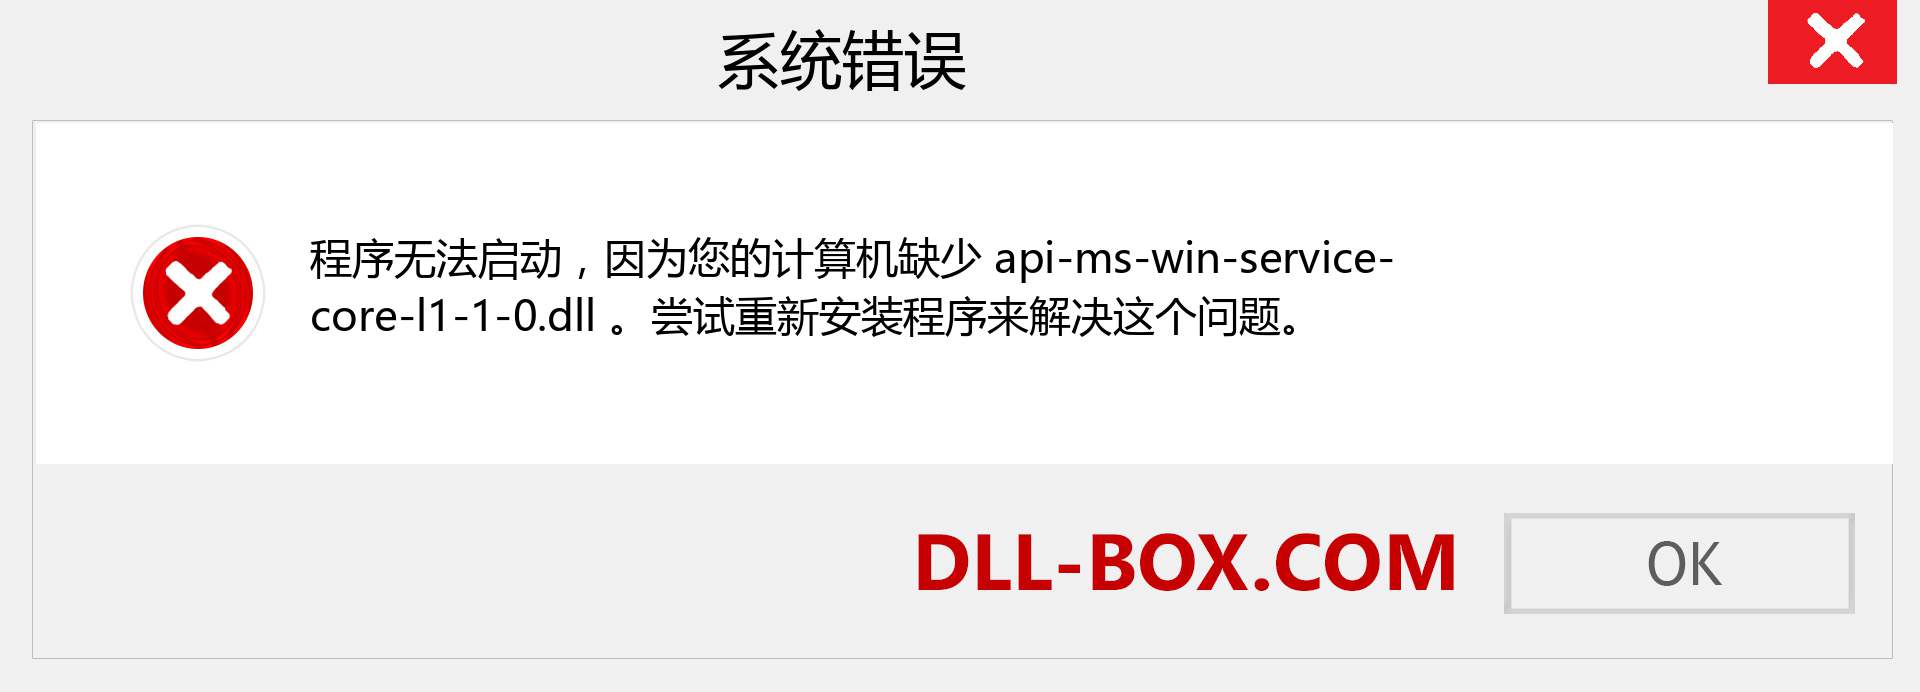 api-ms-win-service-core-l1-1-0.dll 文件丢失？。 适用于 Windows 7、8、10 的下载 - 修复 Windows、照片、图像上的 api-ms-win-service-core-l1-1-0 dll 丢失错误